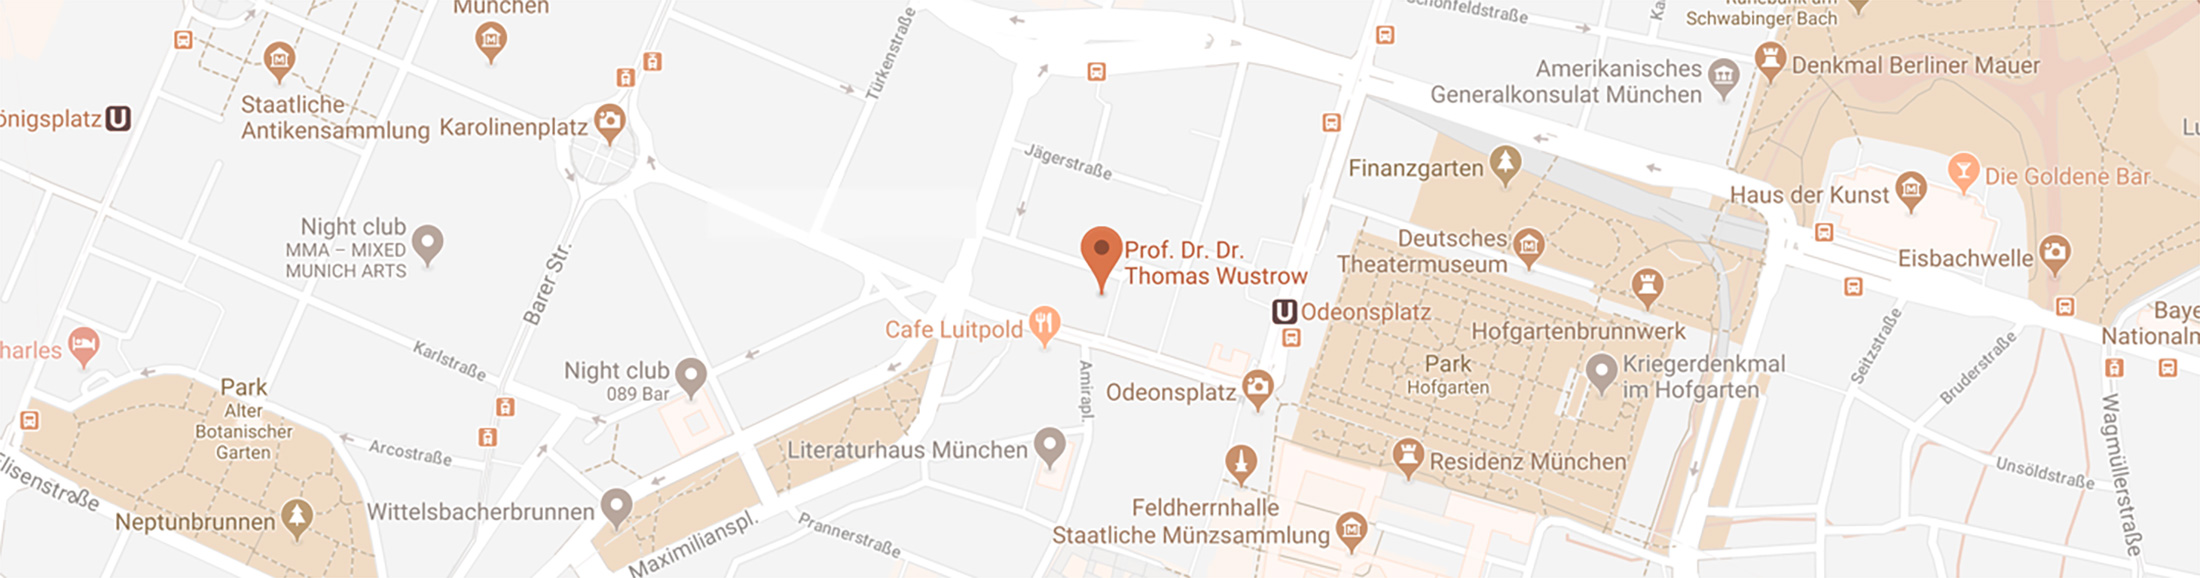 Map View 2200px - Schwerhörigkeit München